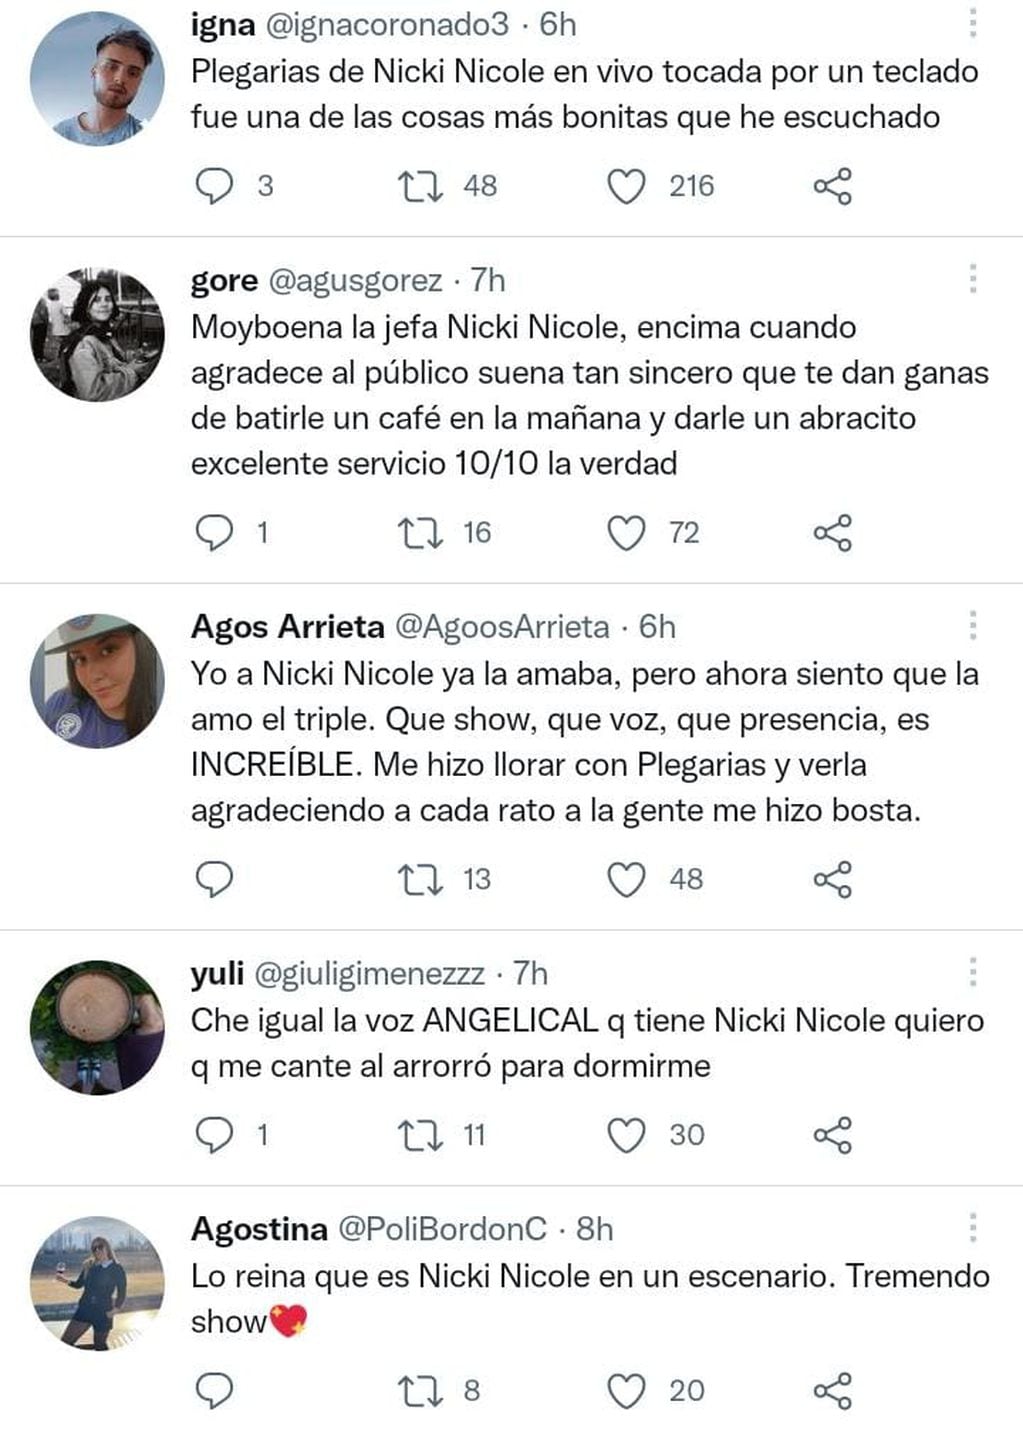 Captura de pantalla de algunos de los twits que hablan del show de Nicky Nicole en Mendoza.